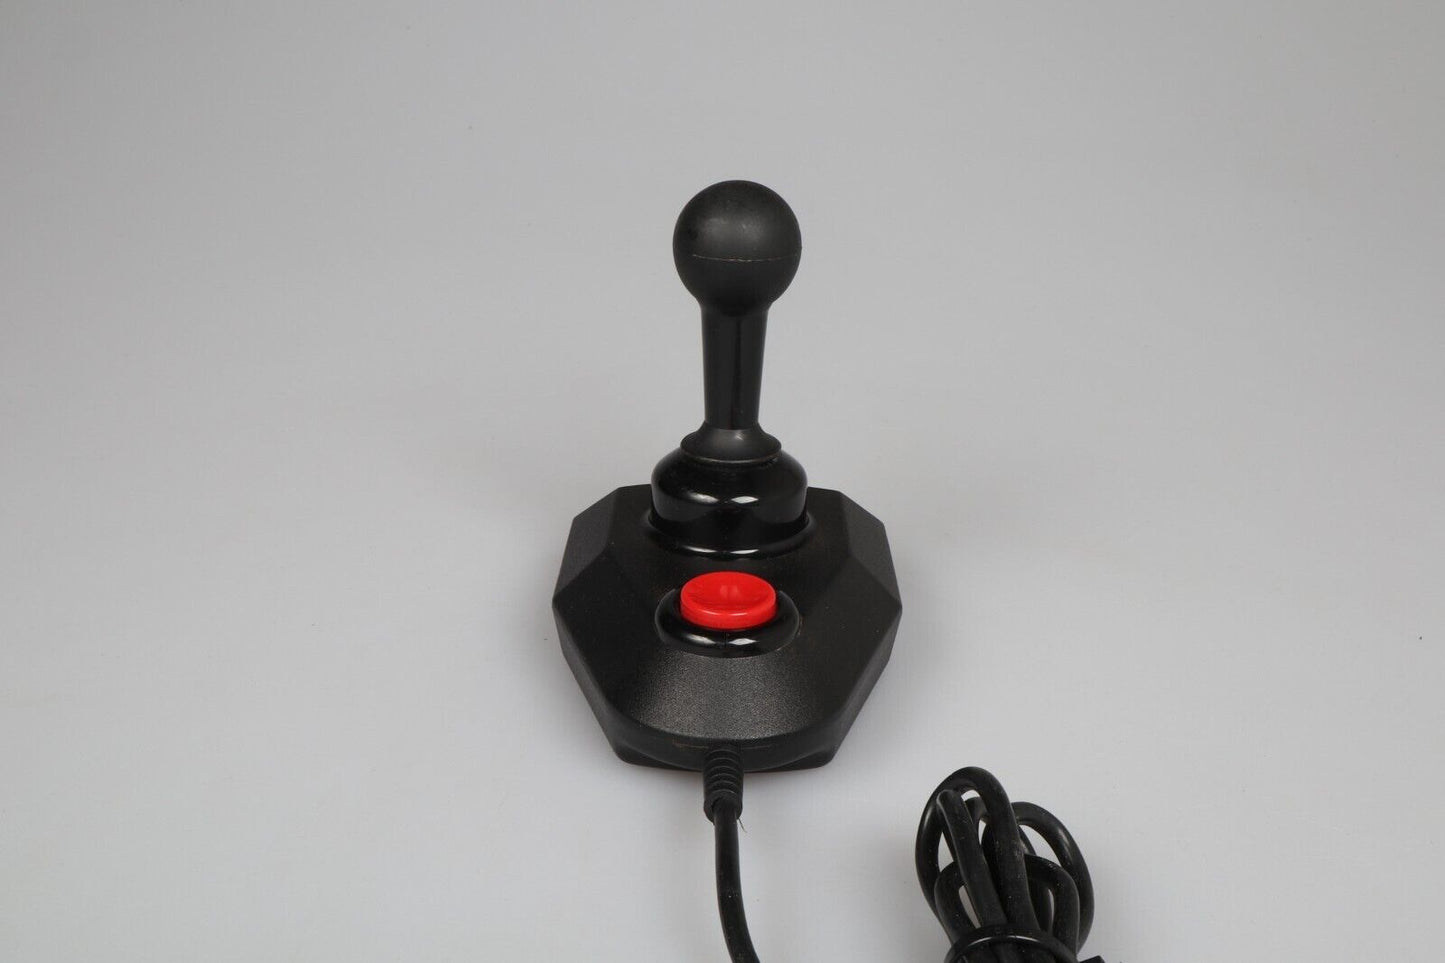 Atari 2600 | The Arcade Controller